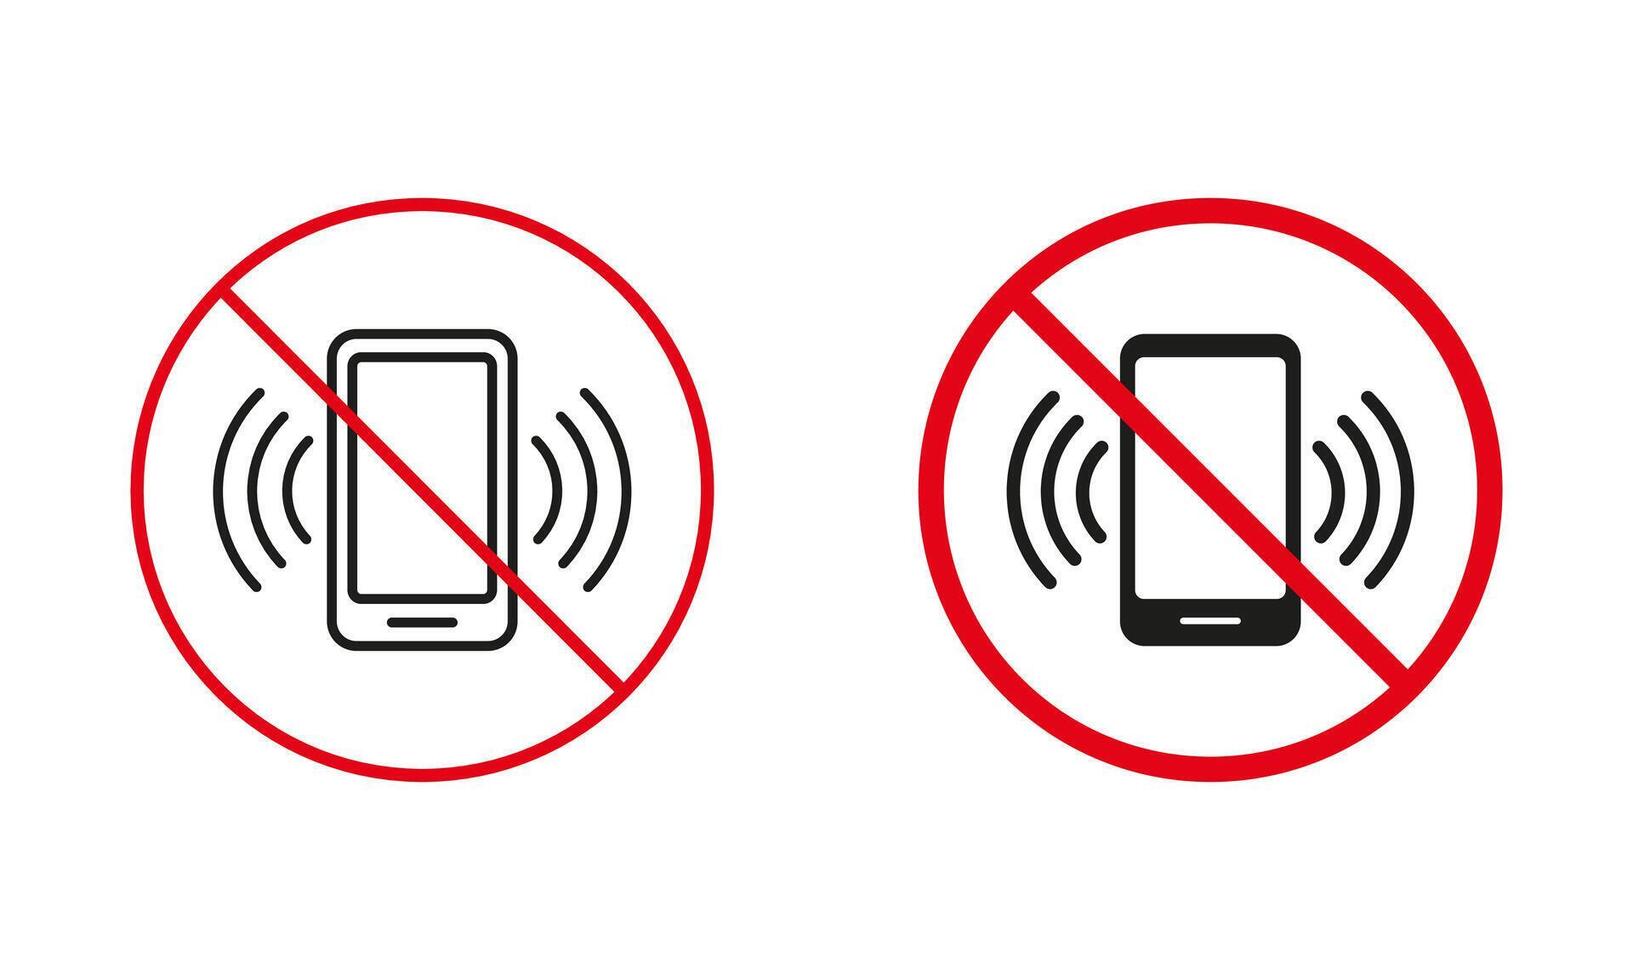 No móvil teléfono permitido advertencia firmar colocar. vocación prohibido, utilizar teléfono inteligente es prohibido línea y silueta iconos silencio zona rojo circulo símbolo. aislado vector ilustración